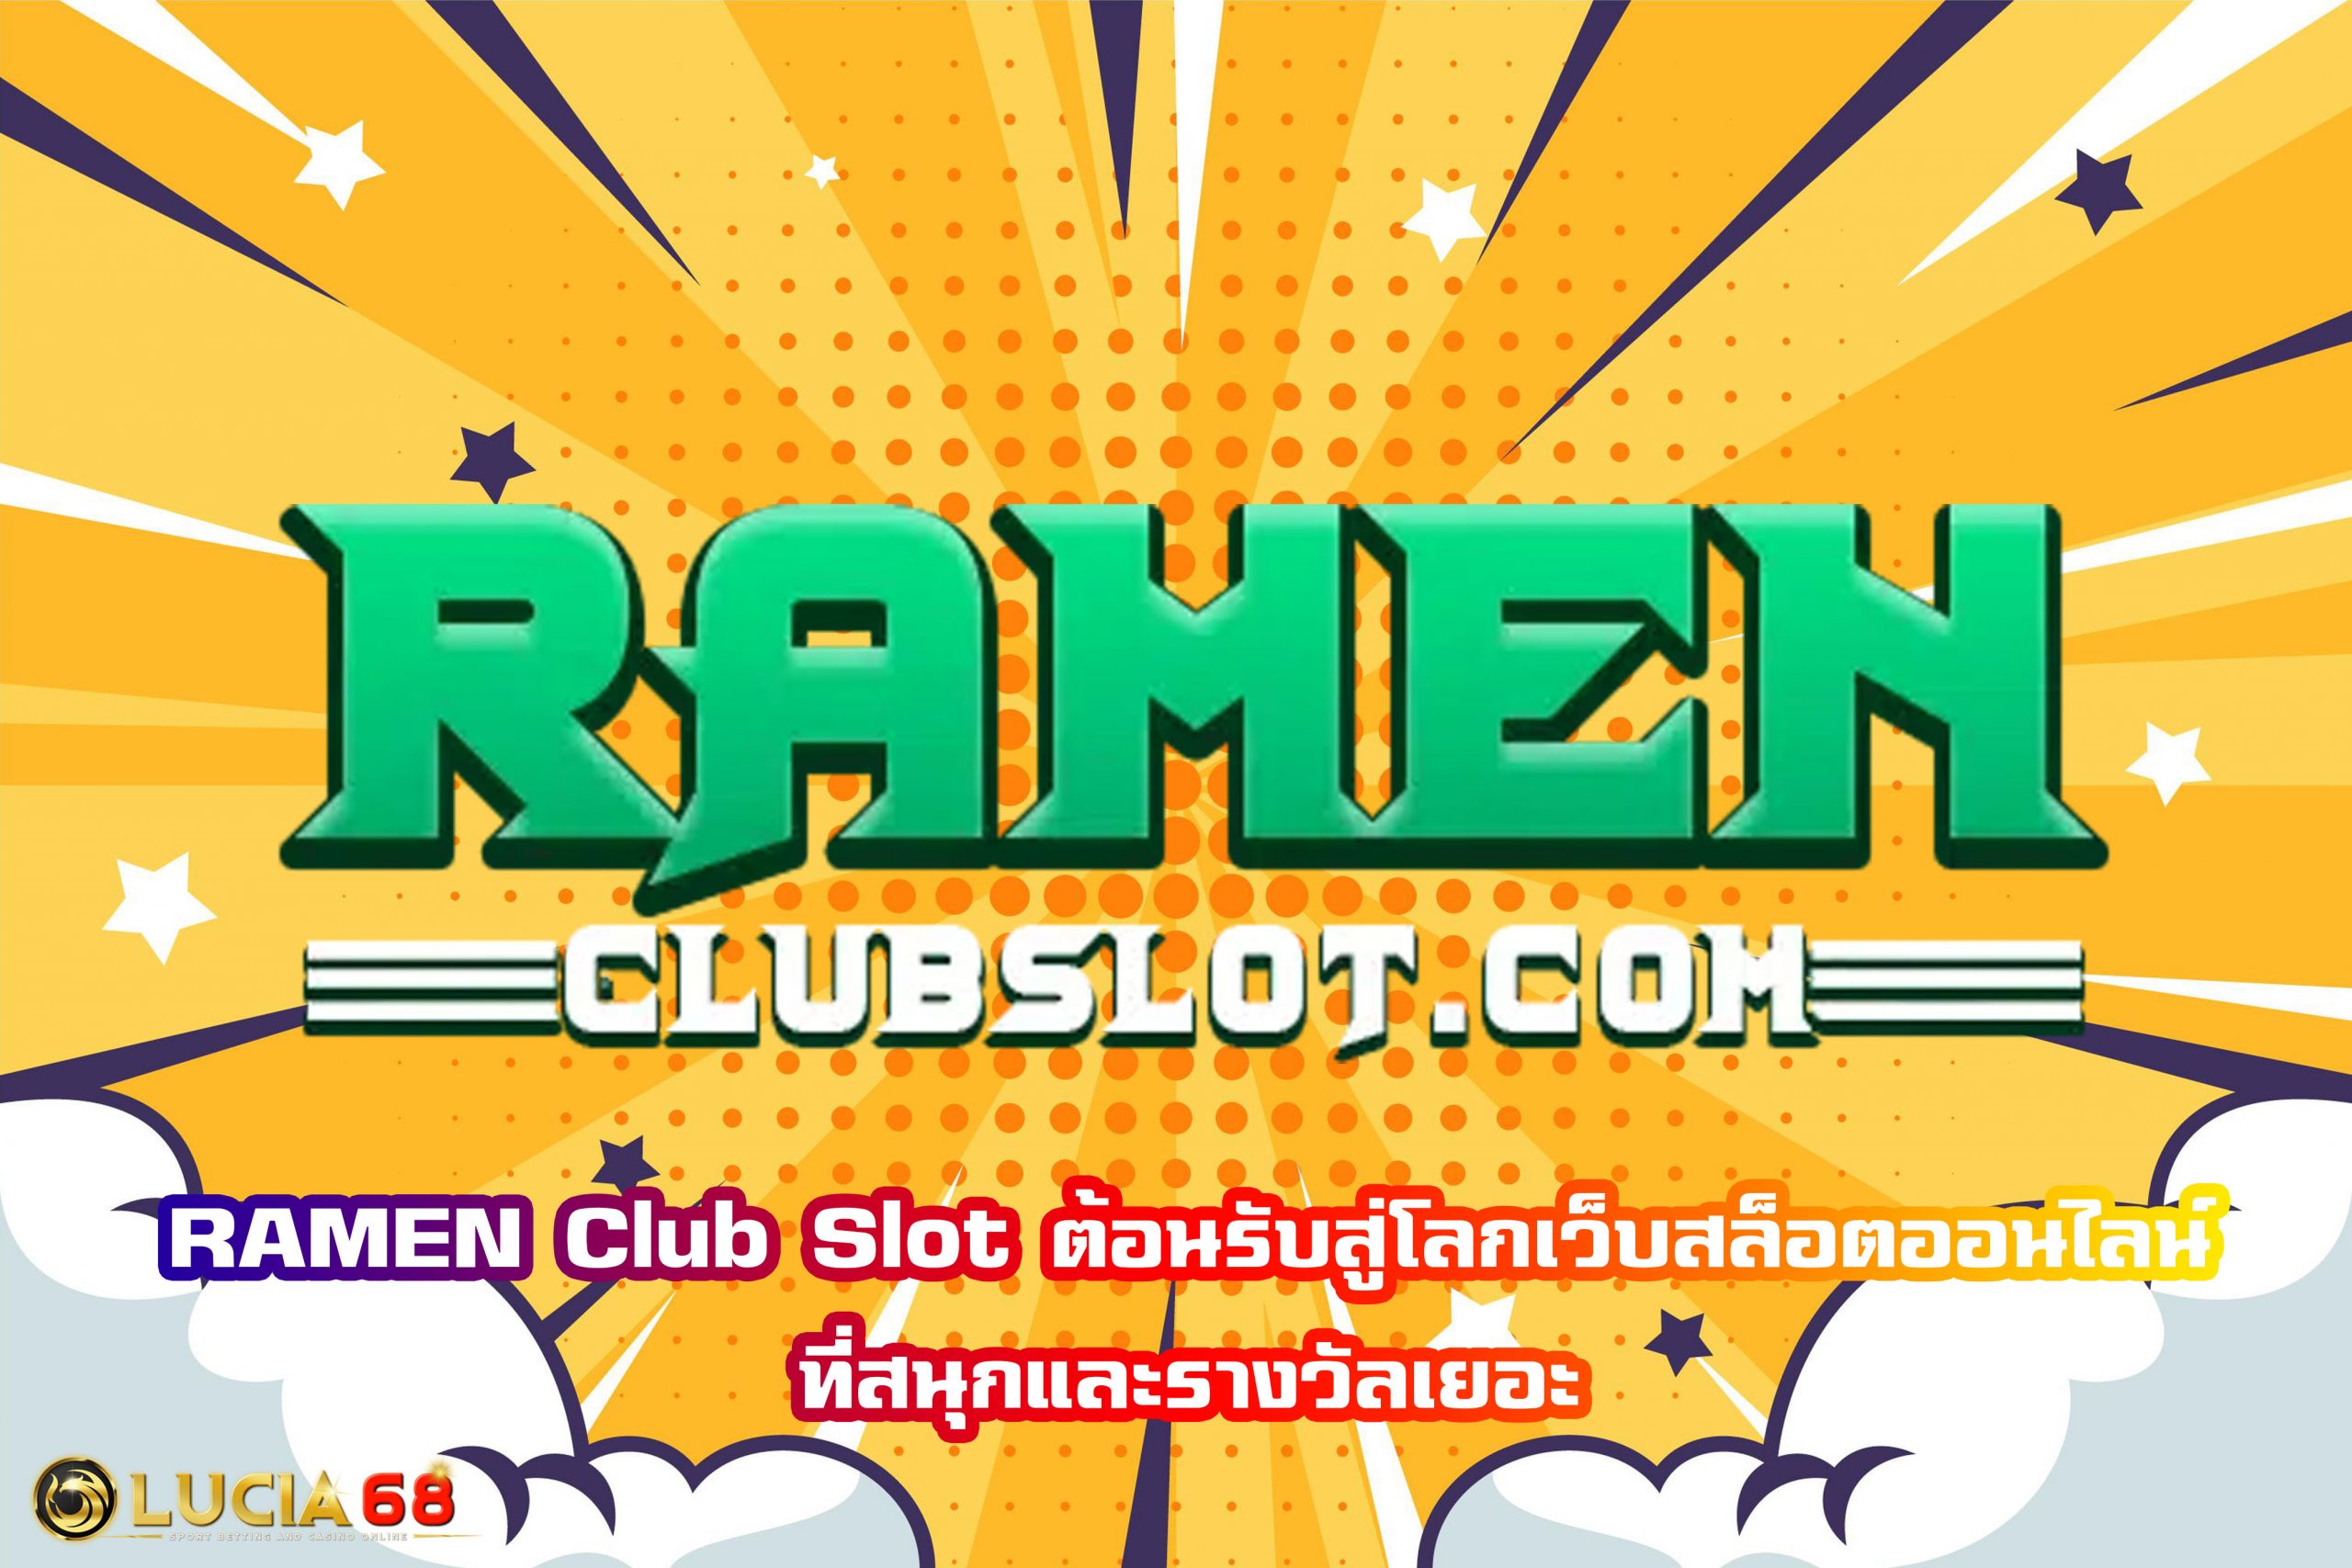 RAMEN Club Slot ต้อนรับสู่โลกเว็บสล็อตออนไลน์ที่สนุกและรางวัลเยอะ